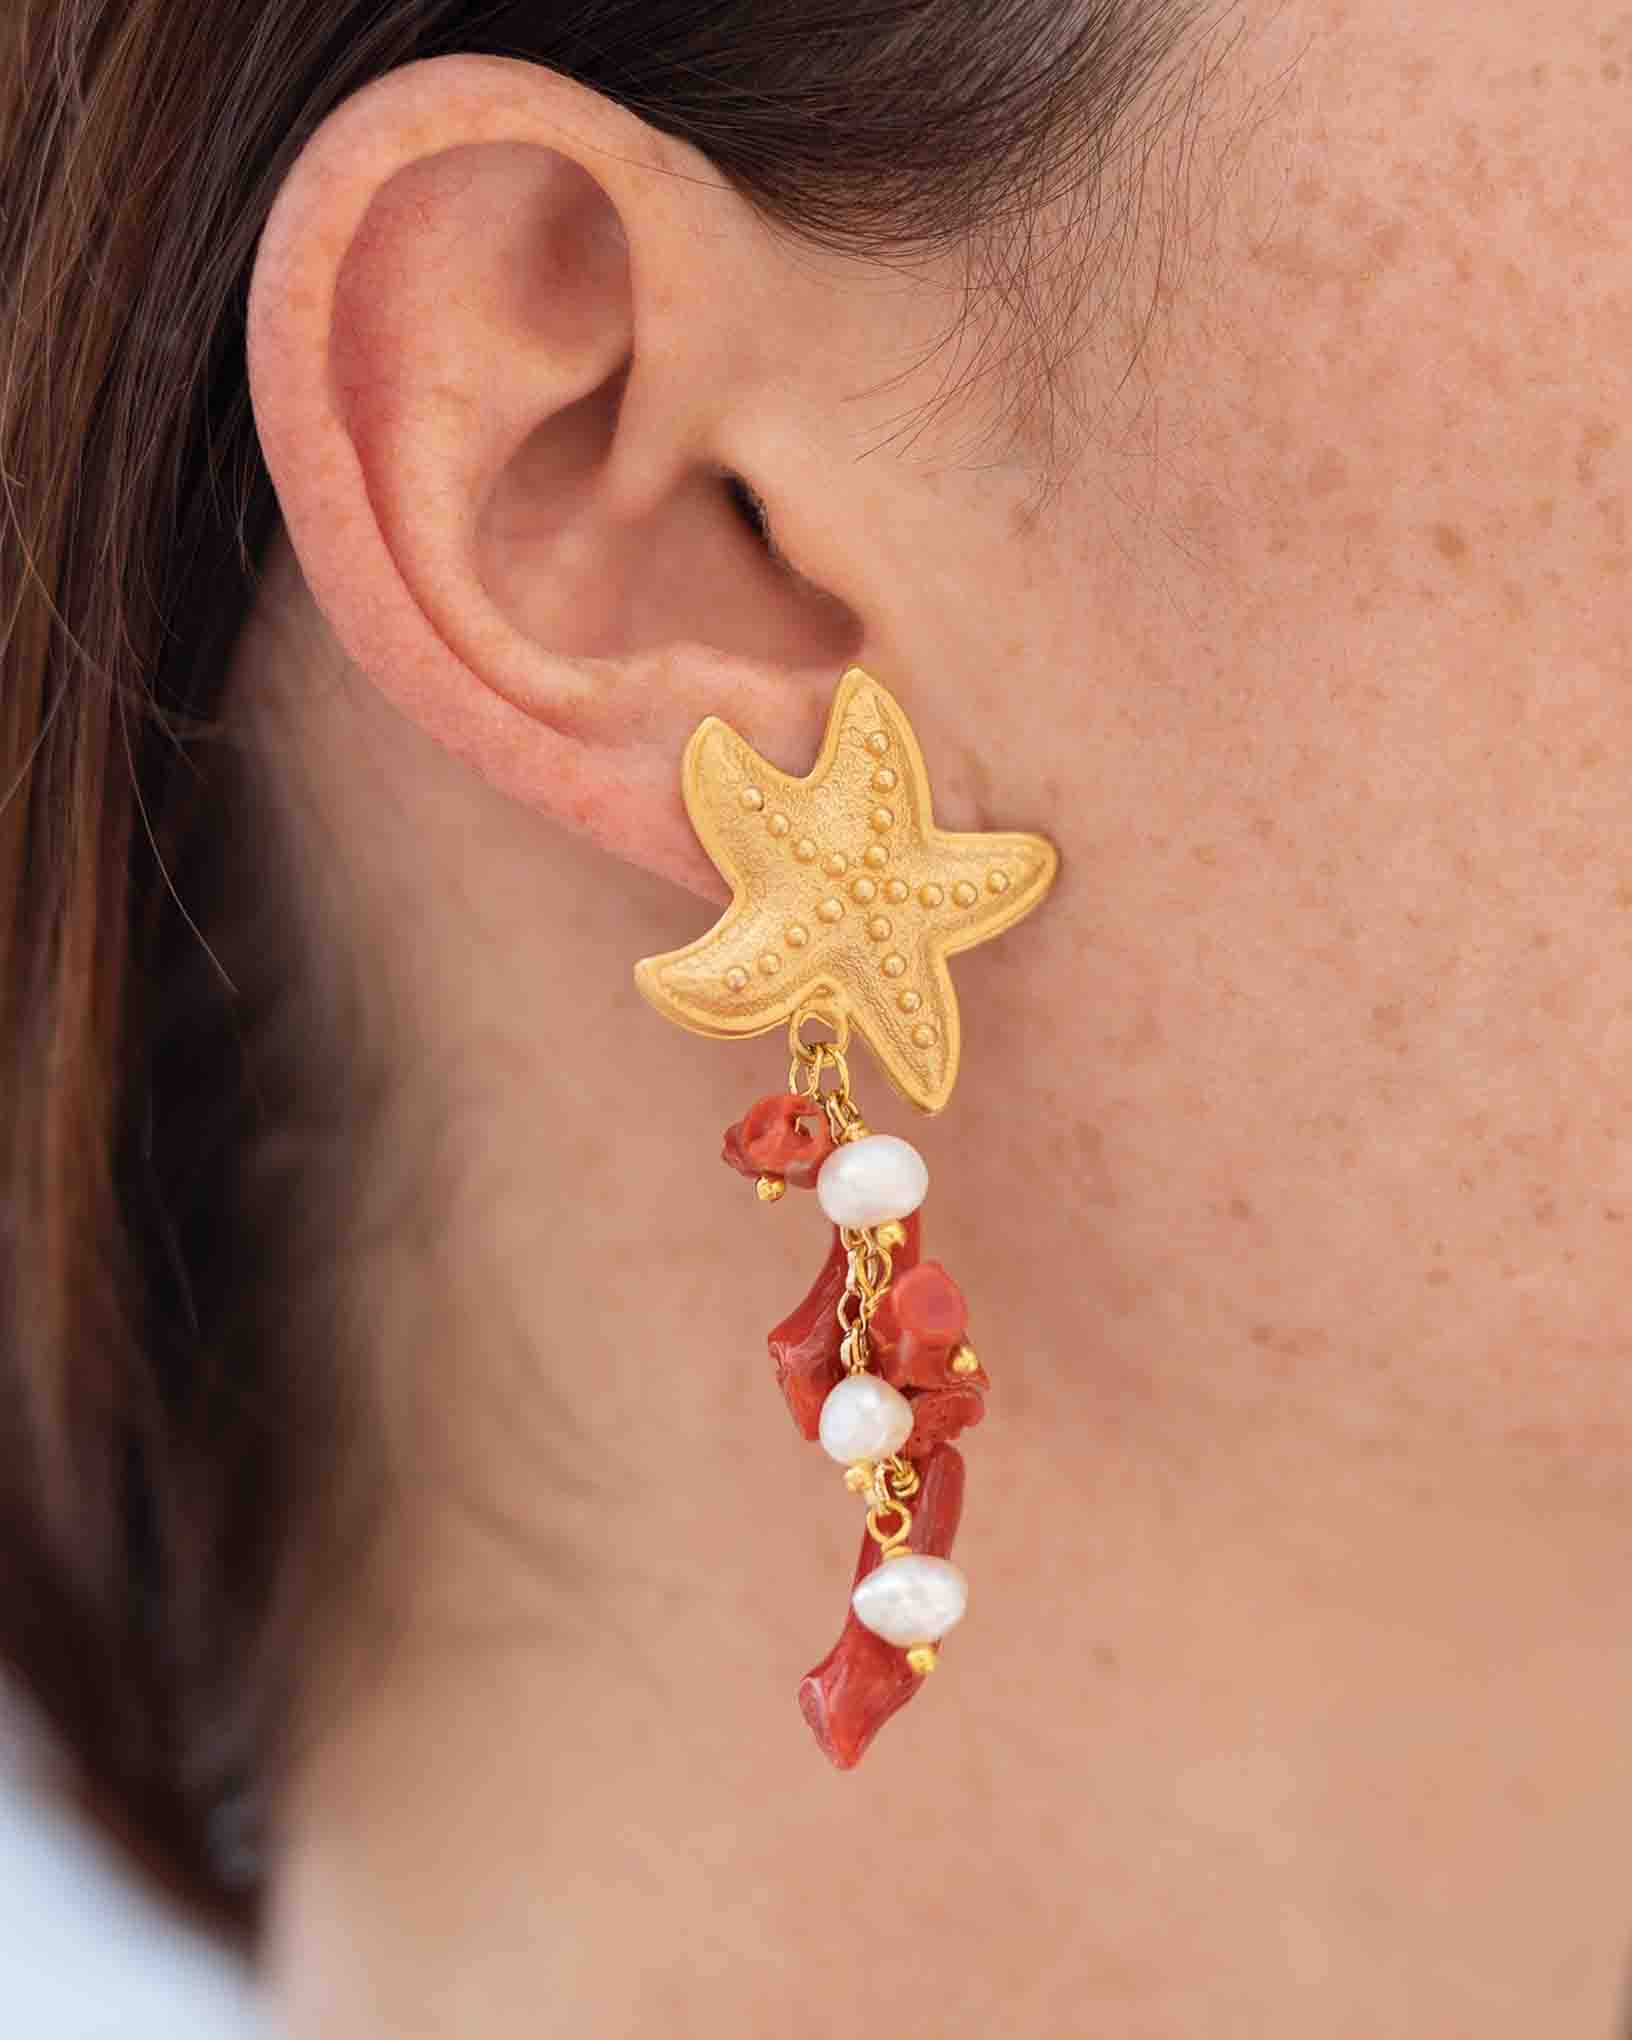 Ohrring Traversone aus der Kollektion Perle e Coralli von Donna Rachele Jewelry